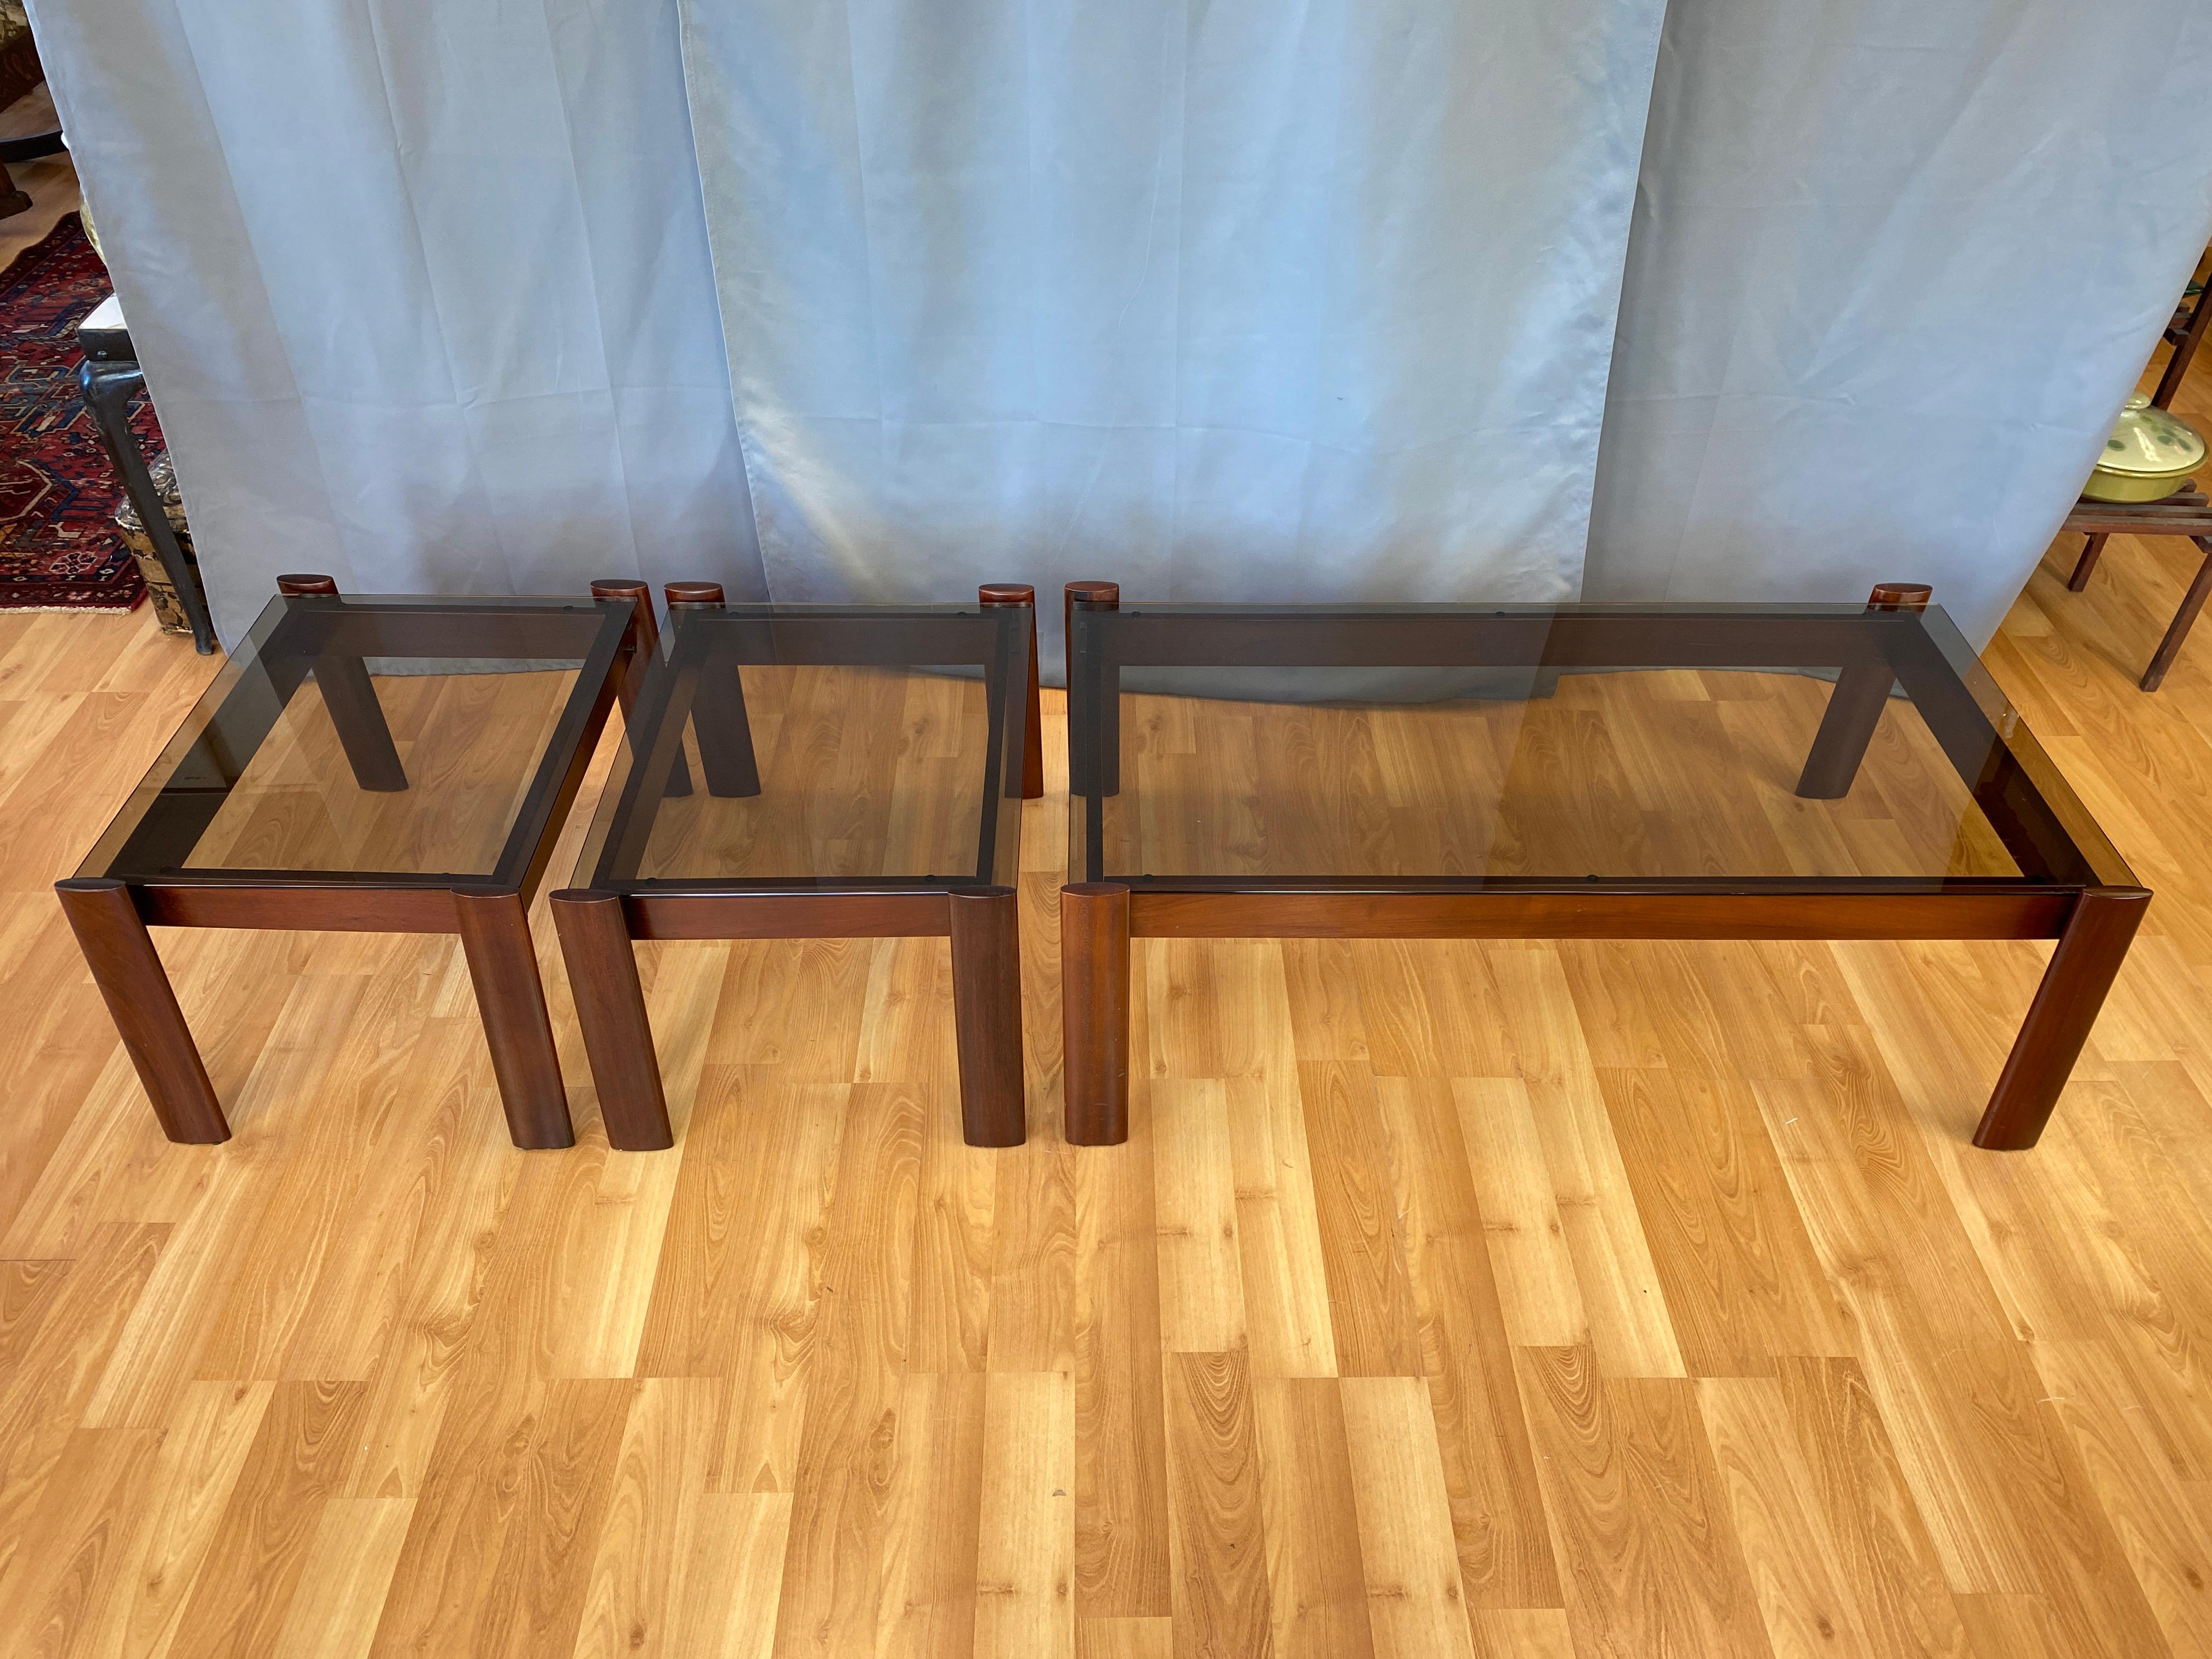 Cet ensemble de trois tables basses et de tables d'appoint en palissandre de Jacaranda, conçues par Percival Lafer, est proposé. Toutes les tables ont leur plateau d'origine en verre fumé.

Les mesures pour la table basse ci-dessous, les tables